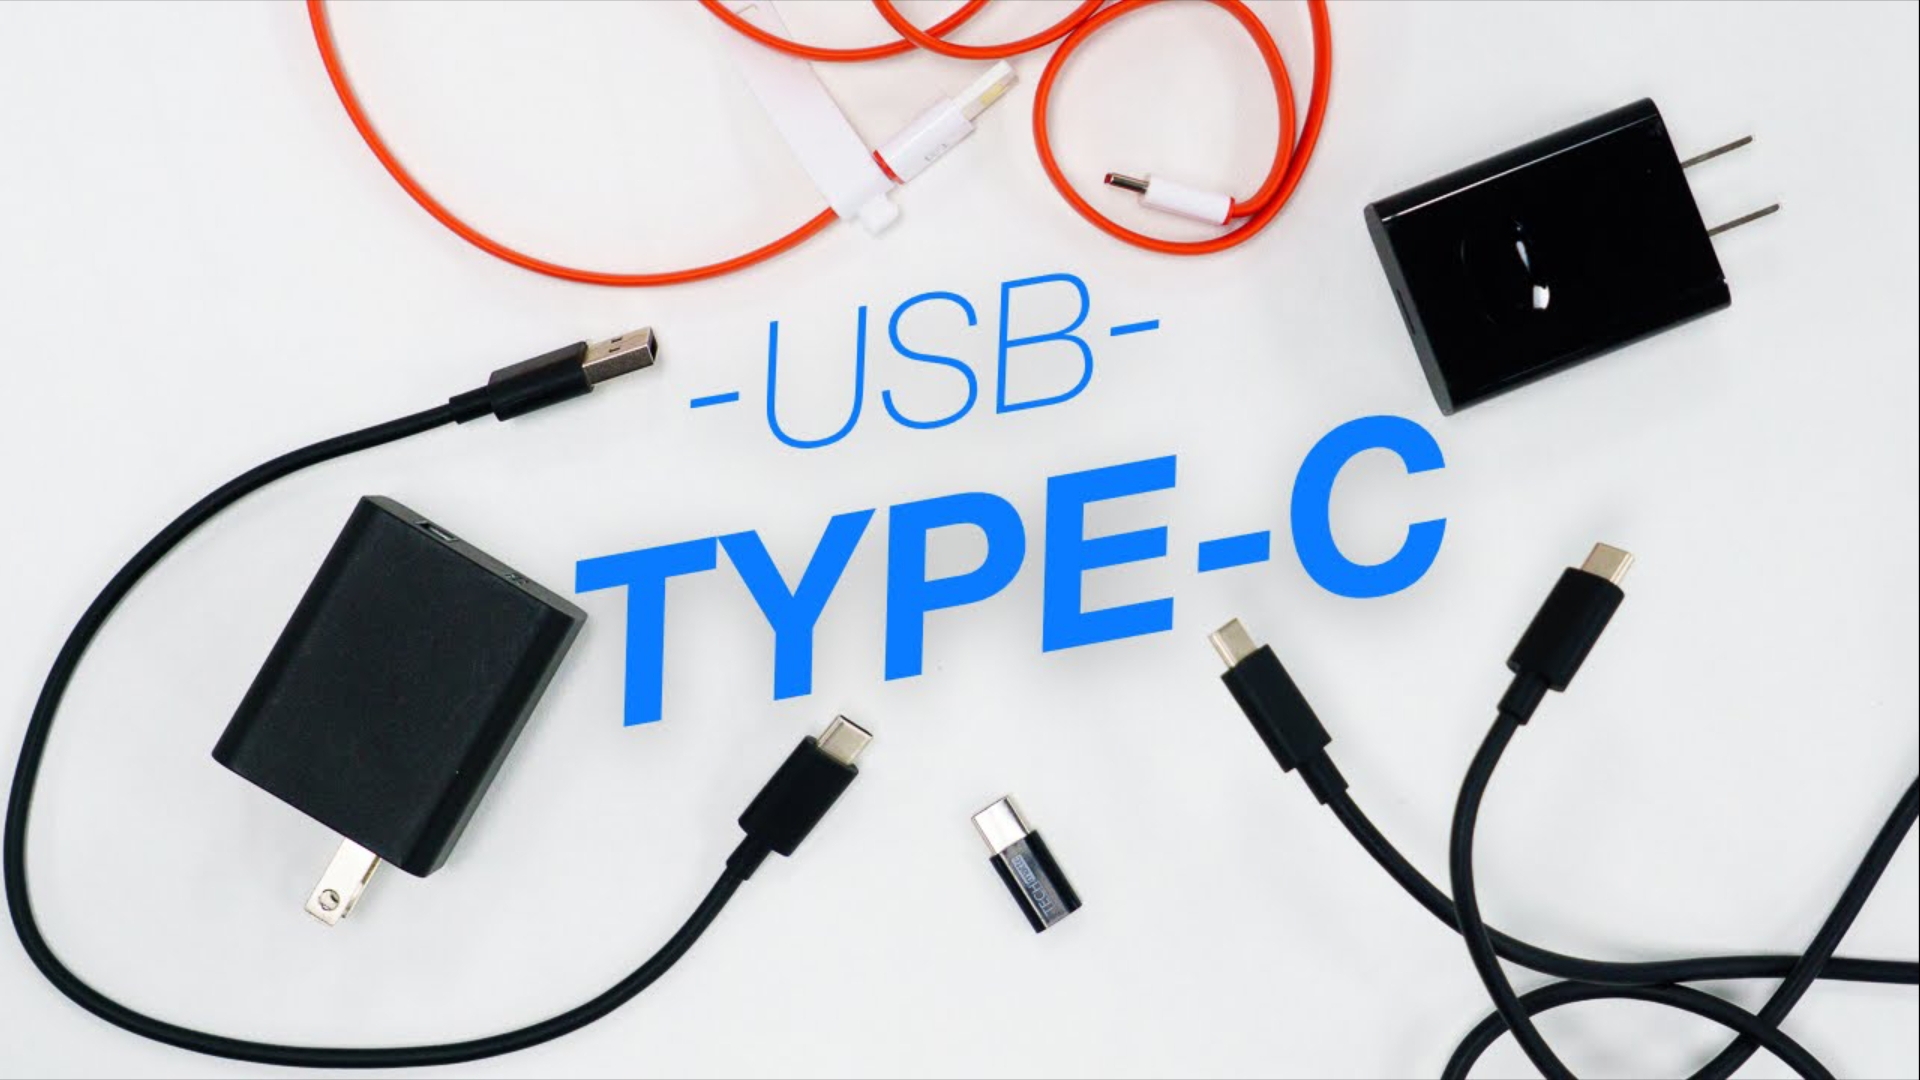 كل ما يهمك عن منفذ USB-C: وحدة المنفذ, تعدد المهام واختلاف الوصلات